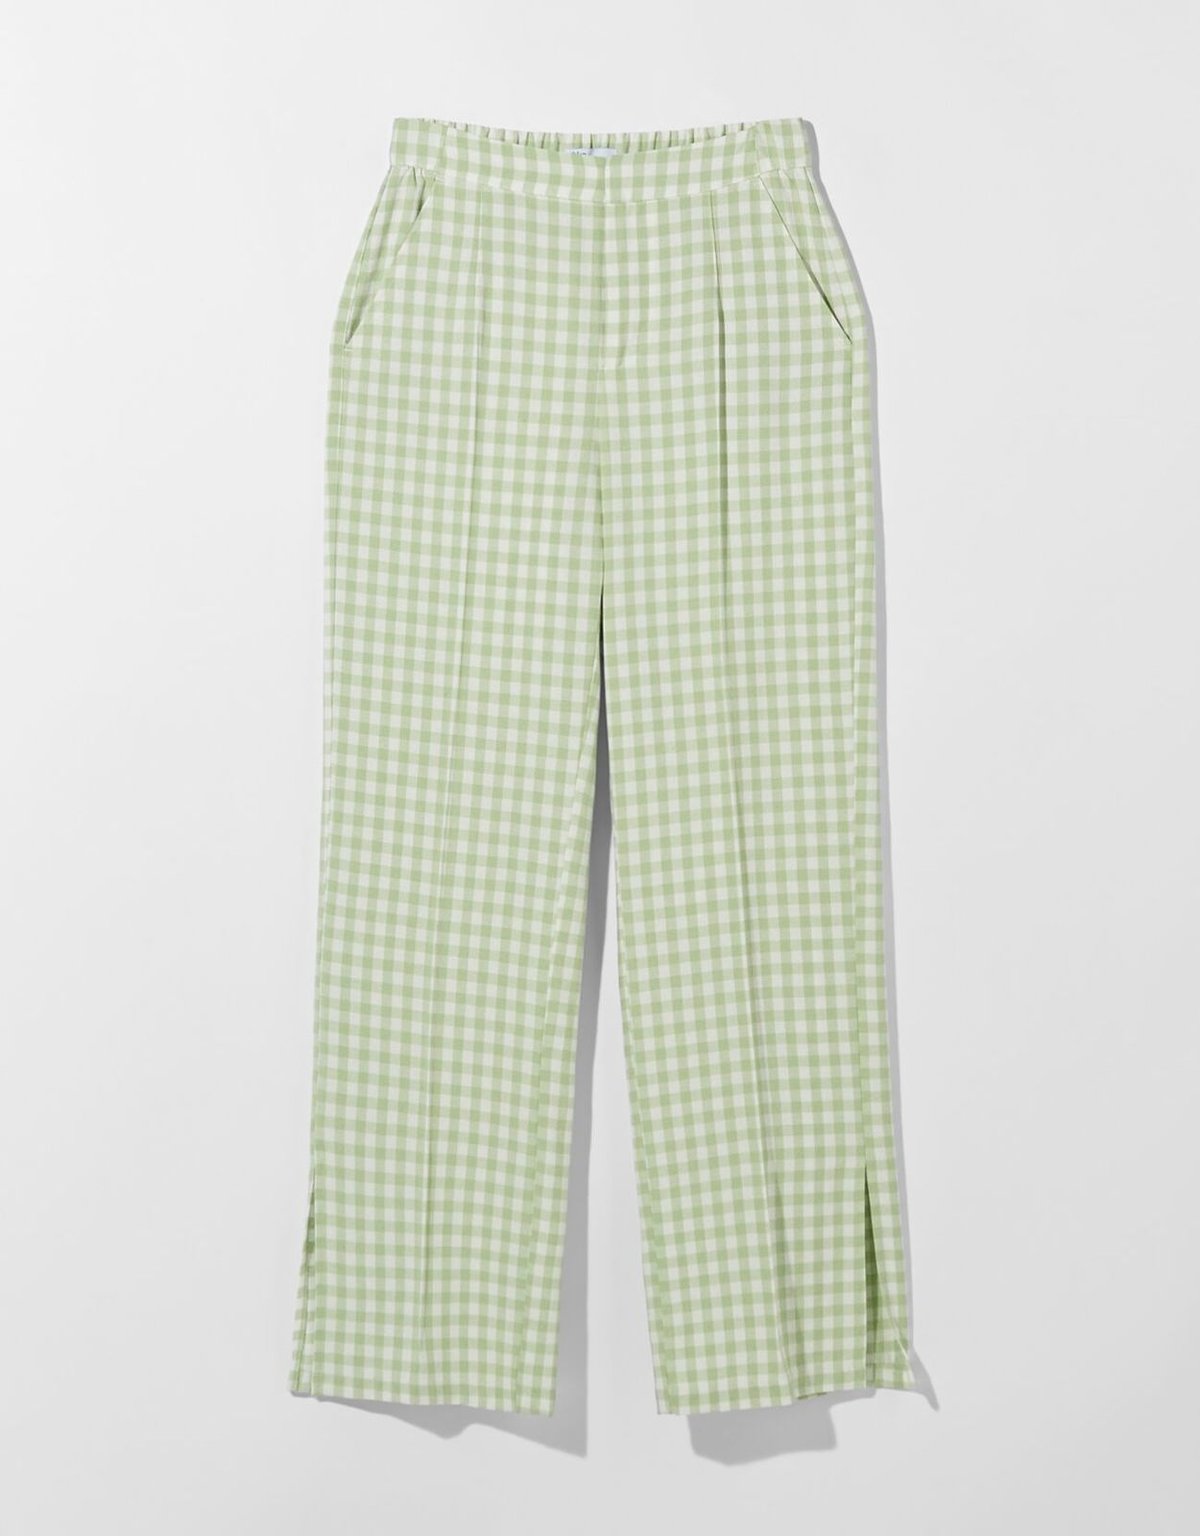 Lněné kalhoty straight fit s kostkou vichy, Bershka, 699 Kč